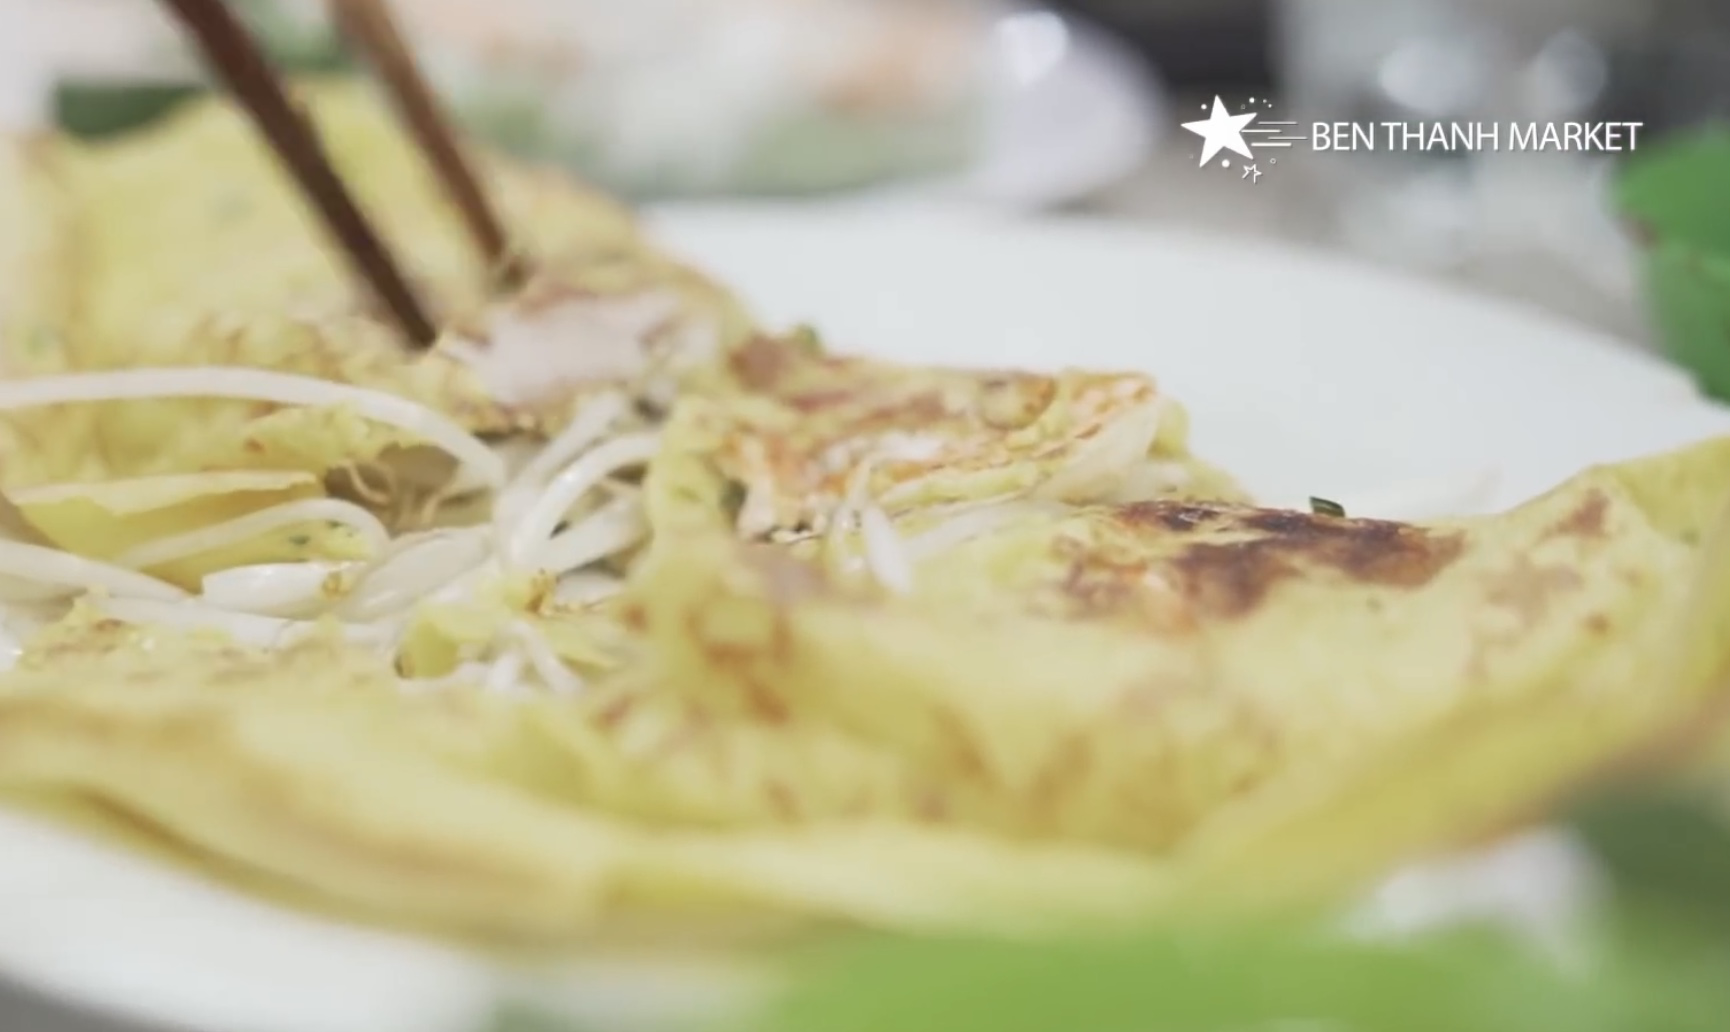 Bánh xèo Việt Nam khiến dàn sao Hàn thích mê vì quá ngon - Ảnh 13.